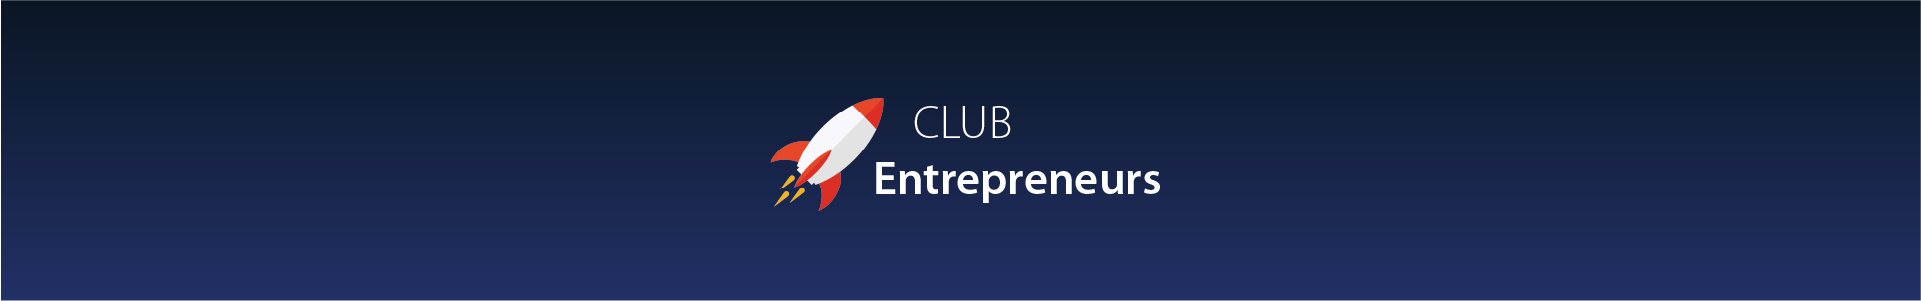 Bannière de présentation de Club entrepreneur